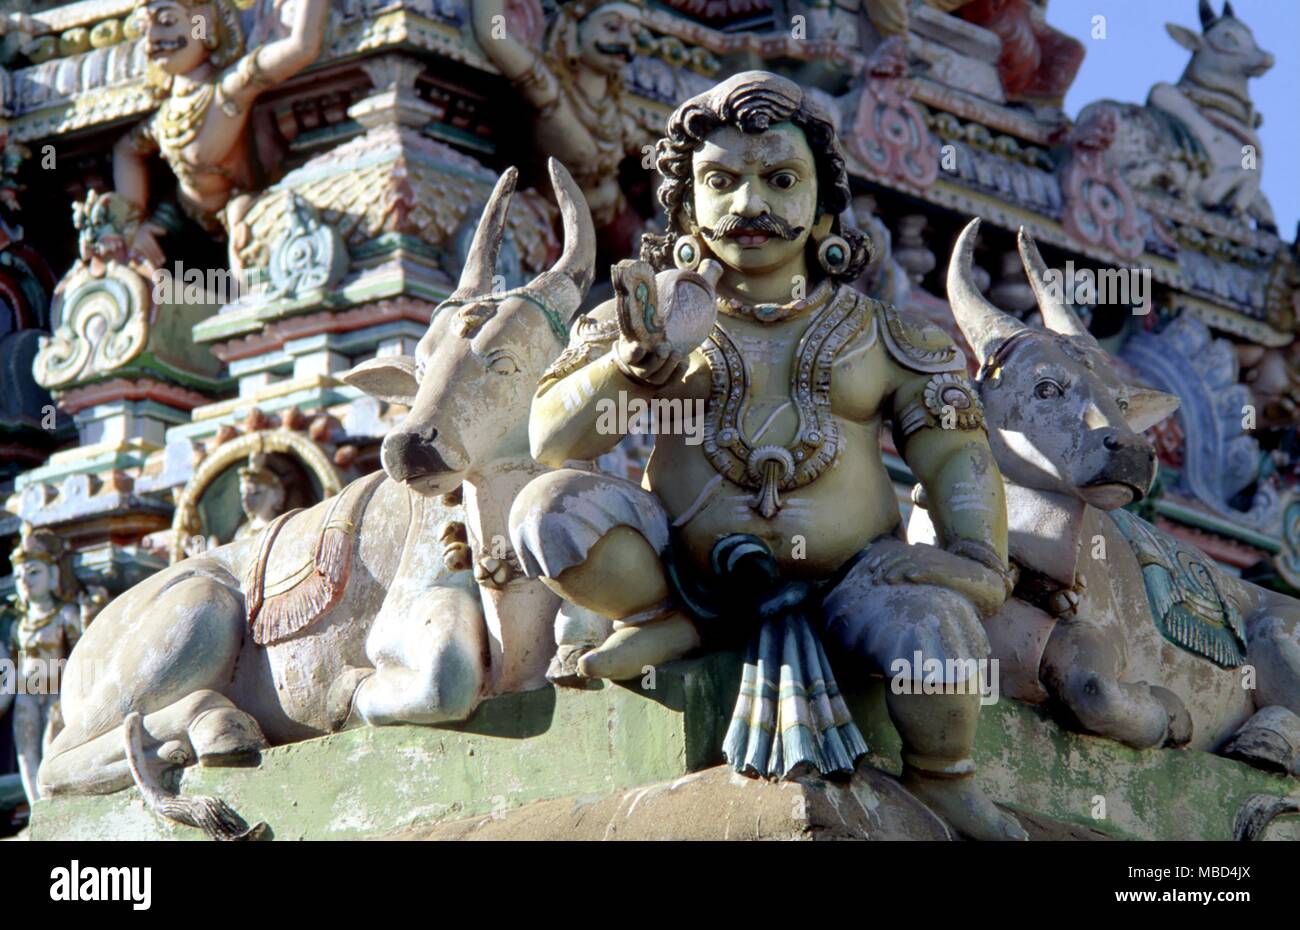 Hinduismus - der hinduistischen Mythologie - Madras - Details der hinduistischen mythologischen Figuren an der Fassade der Kaapaleeshwara Tempel, in Madras, Indien. - ©/CW Stockfoto